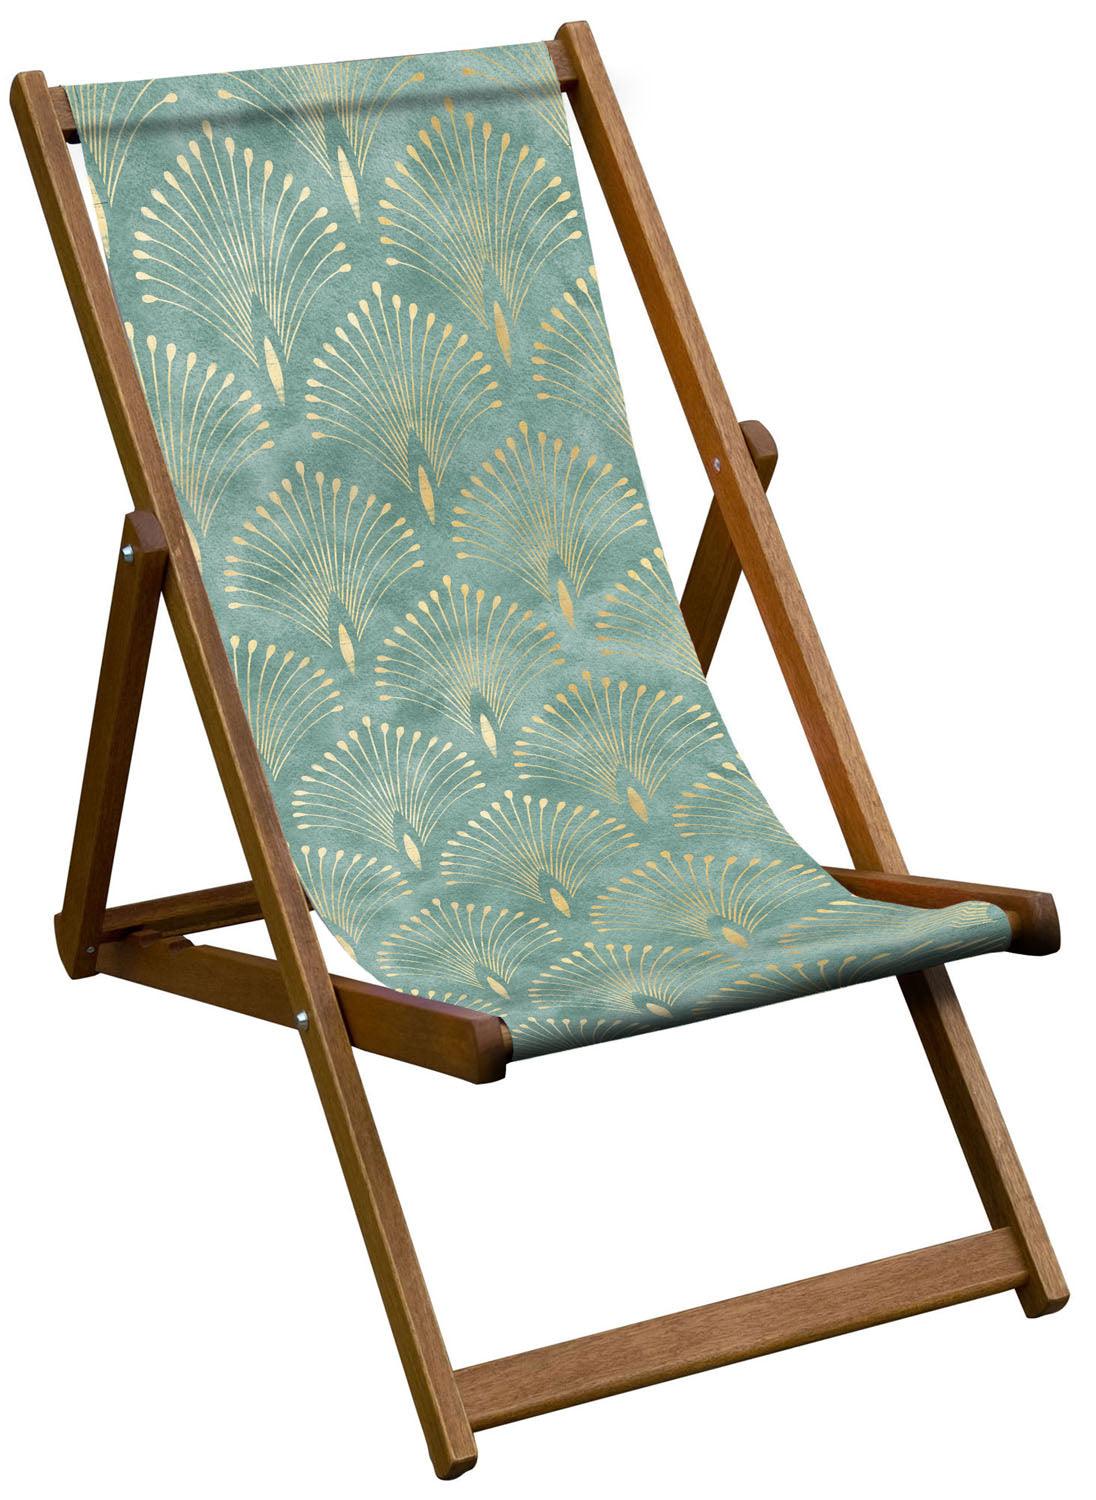 Shell Aqua II - Art Deco Deckchair